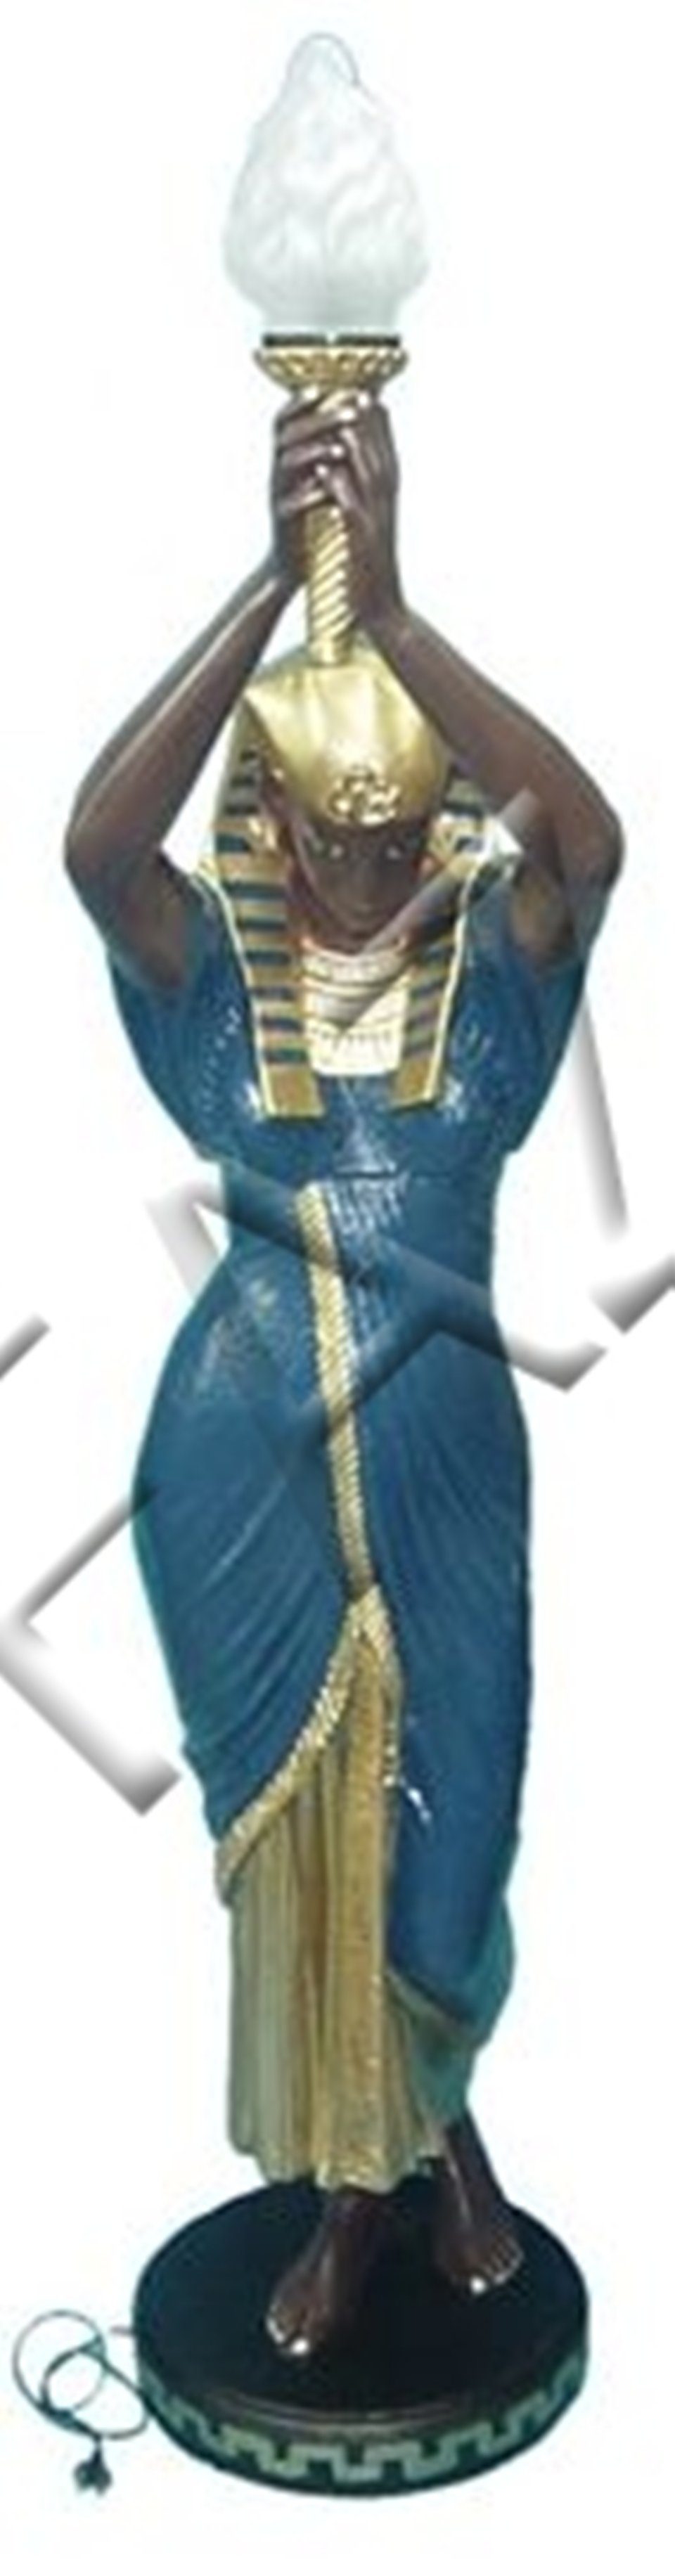 JVmoebel Skulptur Design Ägyptische Dekoration Skulptur Skulpturen Neu Statue Deko Figuren Figur